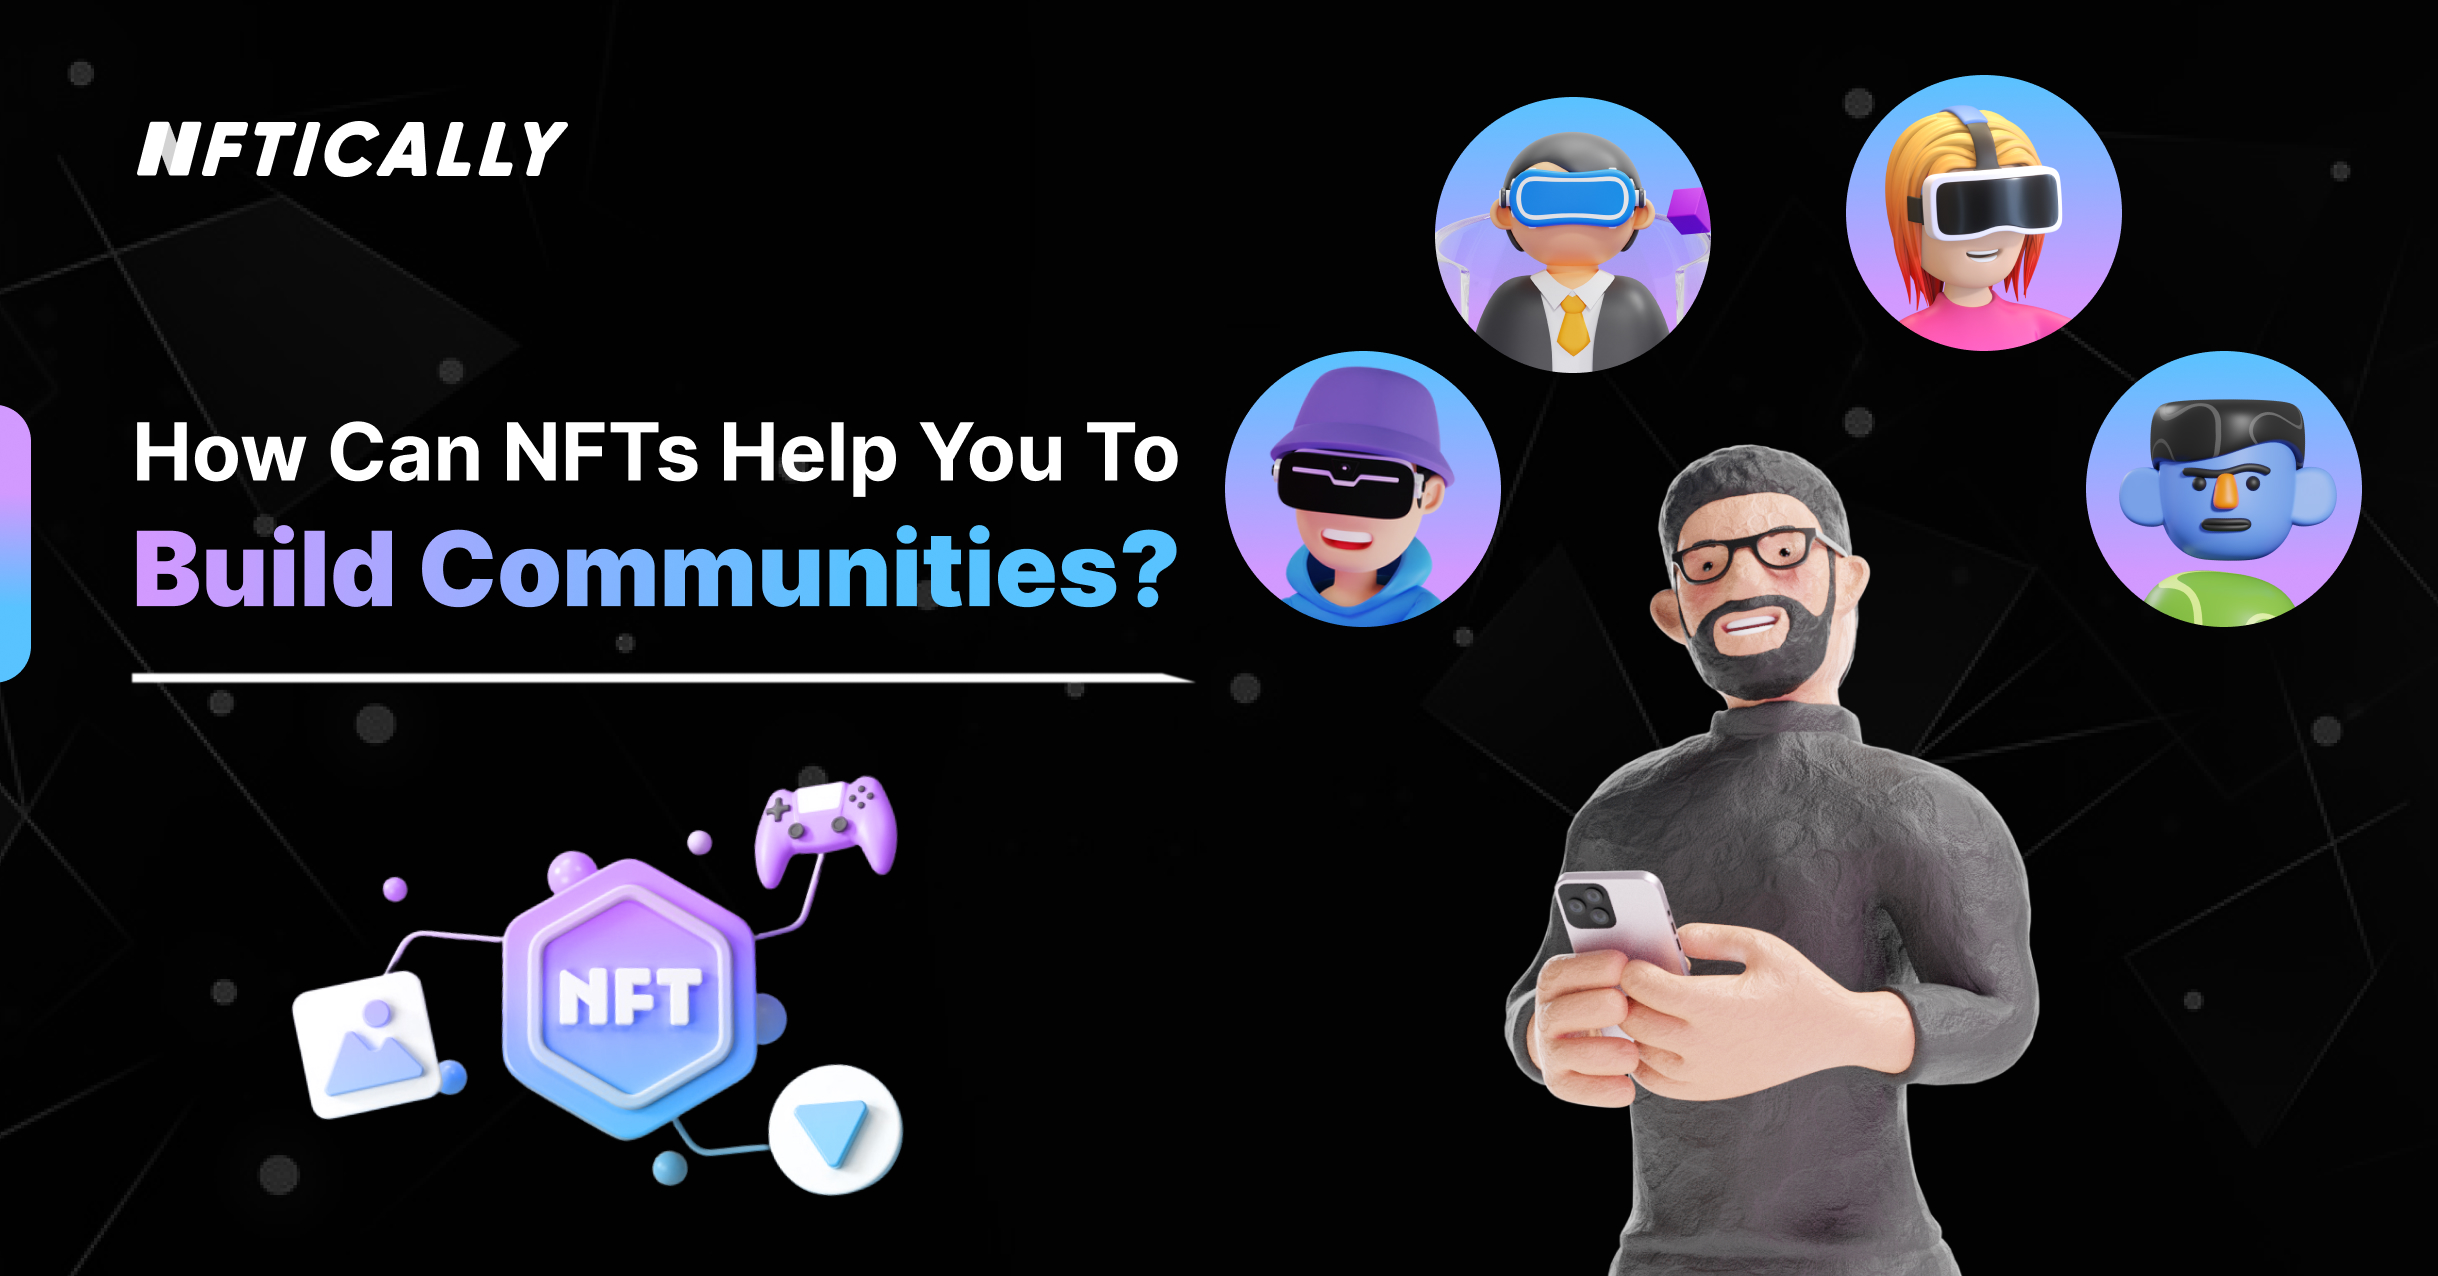 Comunidades: cómo las NFT pueden ayudarle a construir eso - NFTICLY